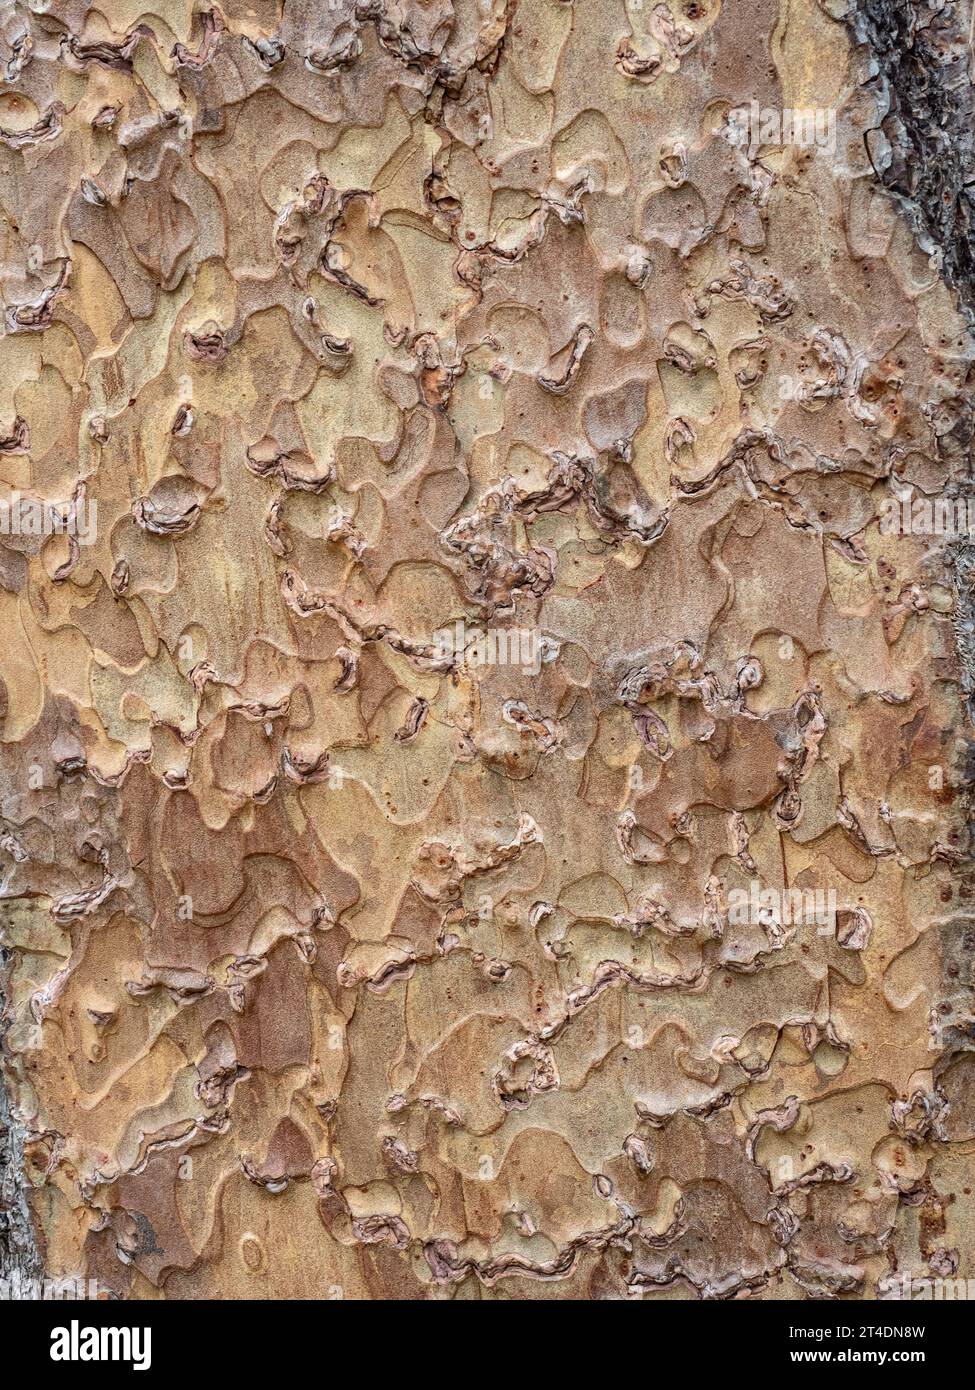 Gros plan de l'écorce écailleuse brun clair de Pinus ponderosa le PIN jaune de l'Ouest. Banque D'Images